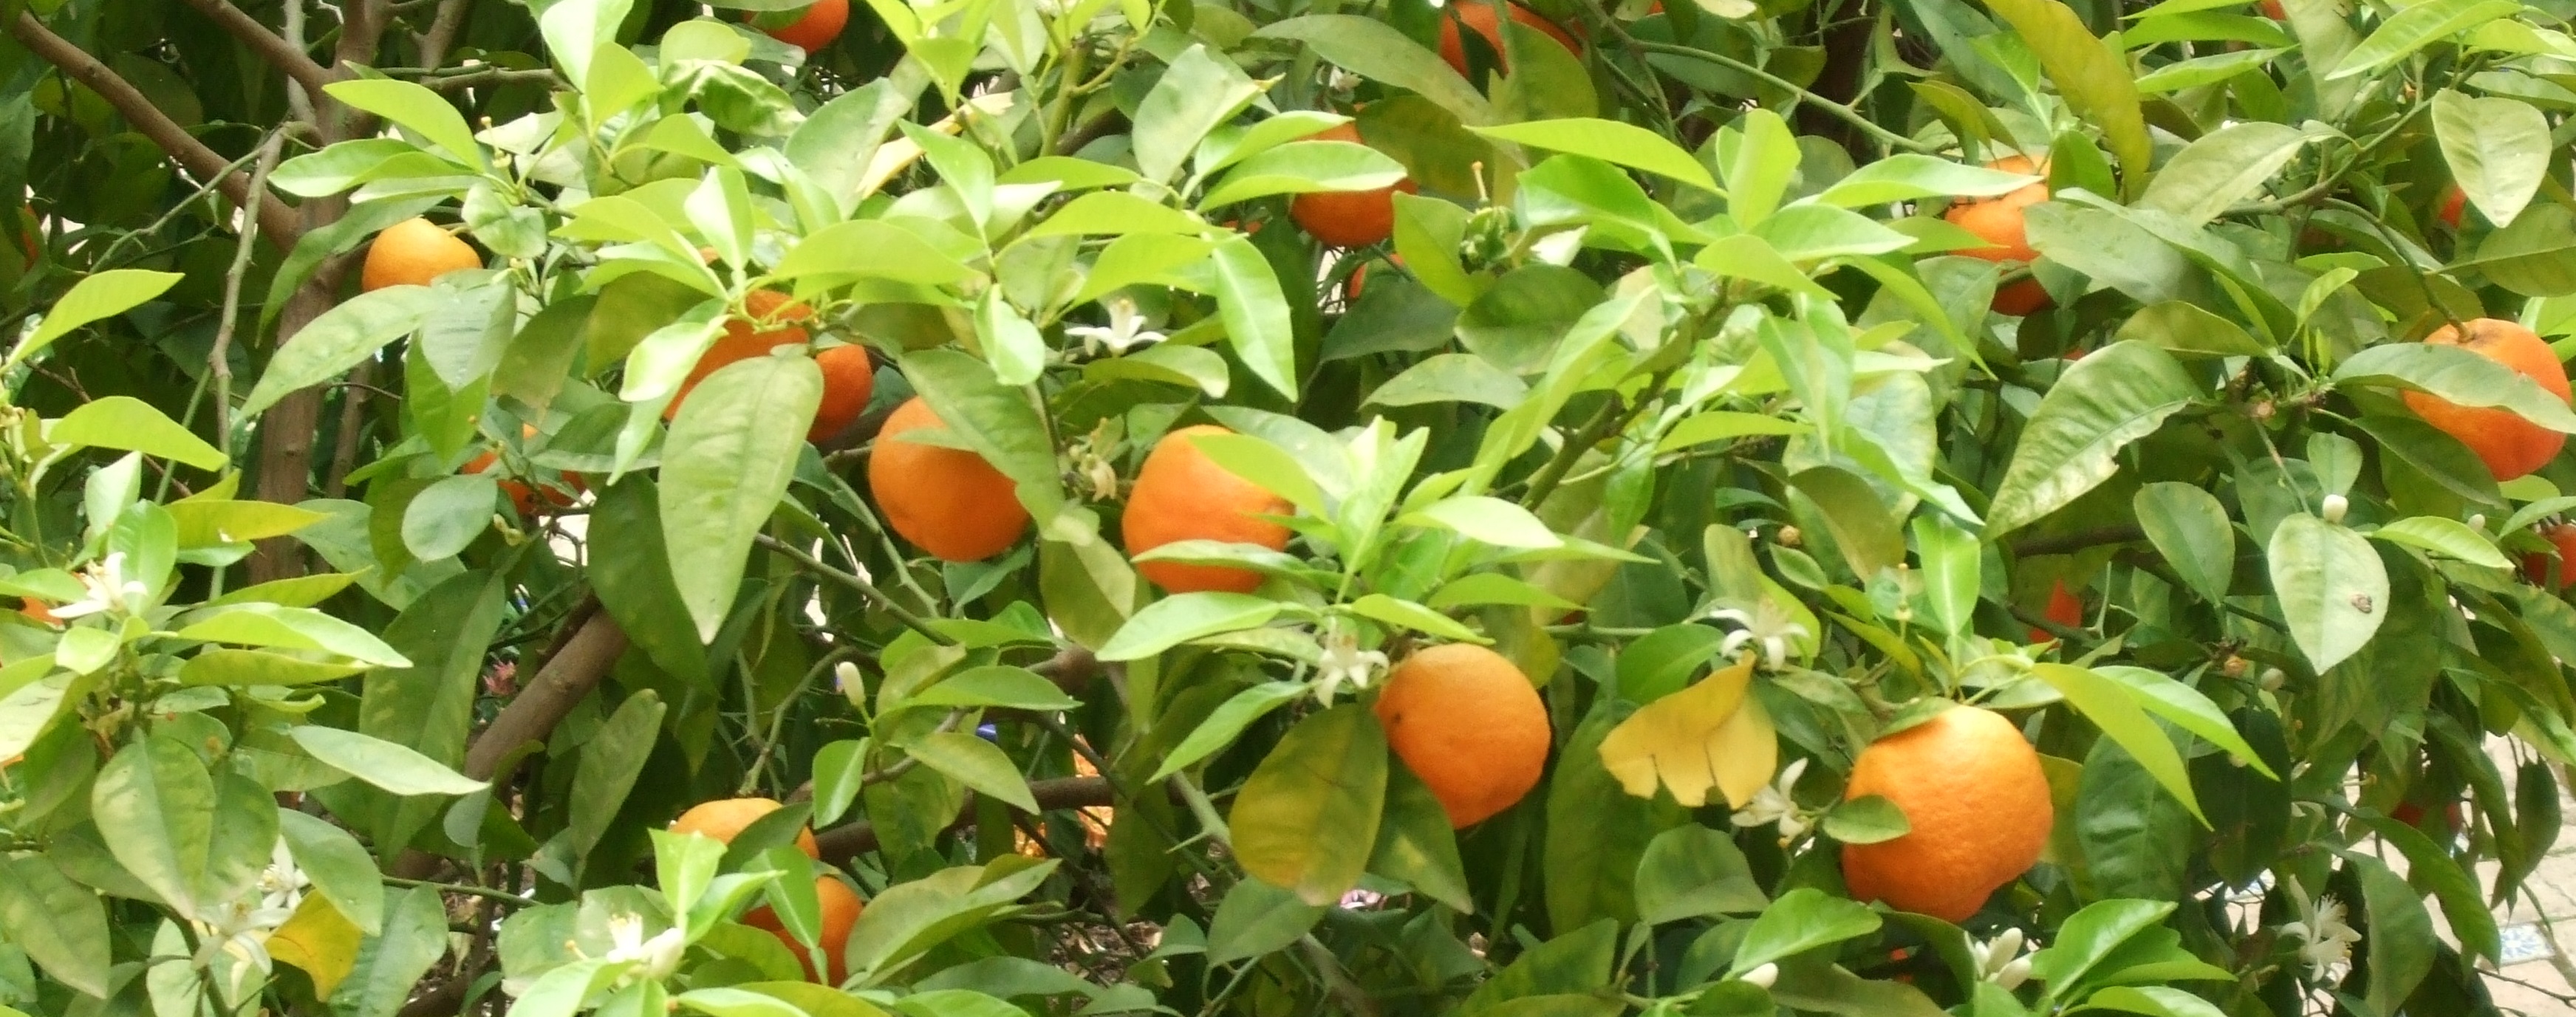 Wilde Sinaasappel